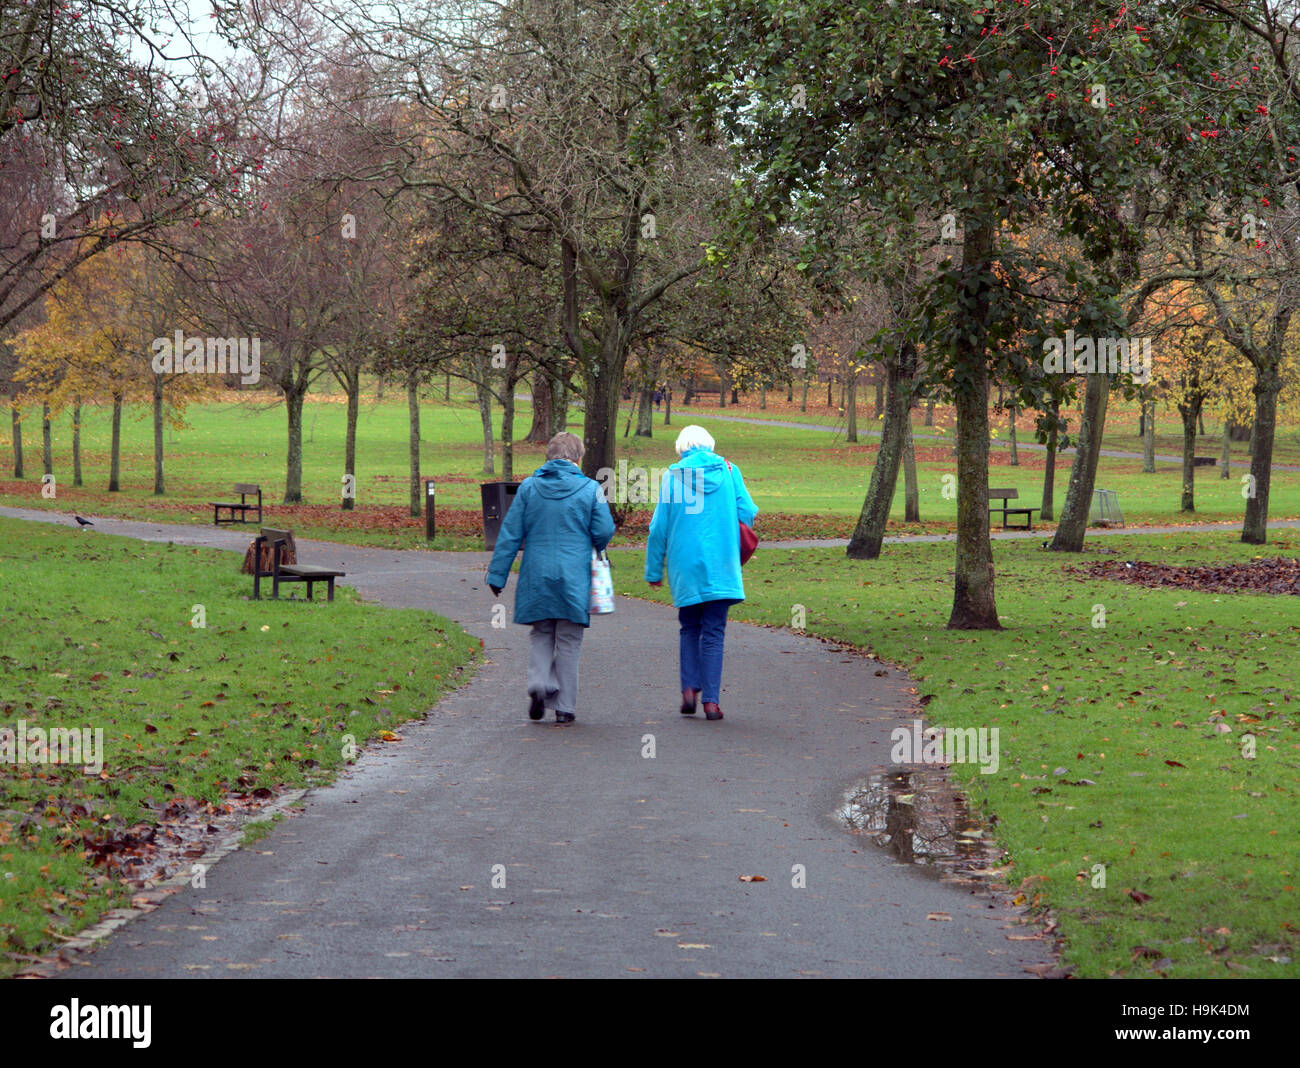 Glasgow park scène deux vieilles dames marche sur le chemin ou route Banque D'Images